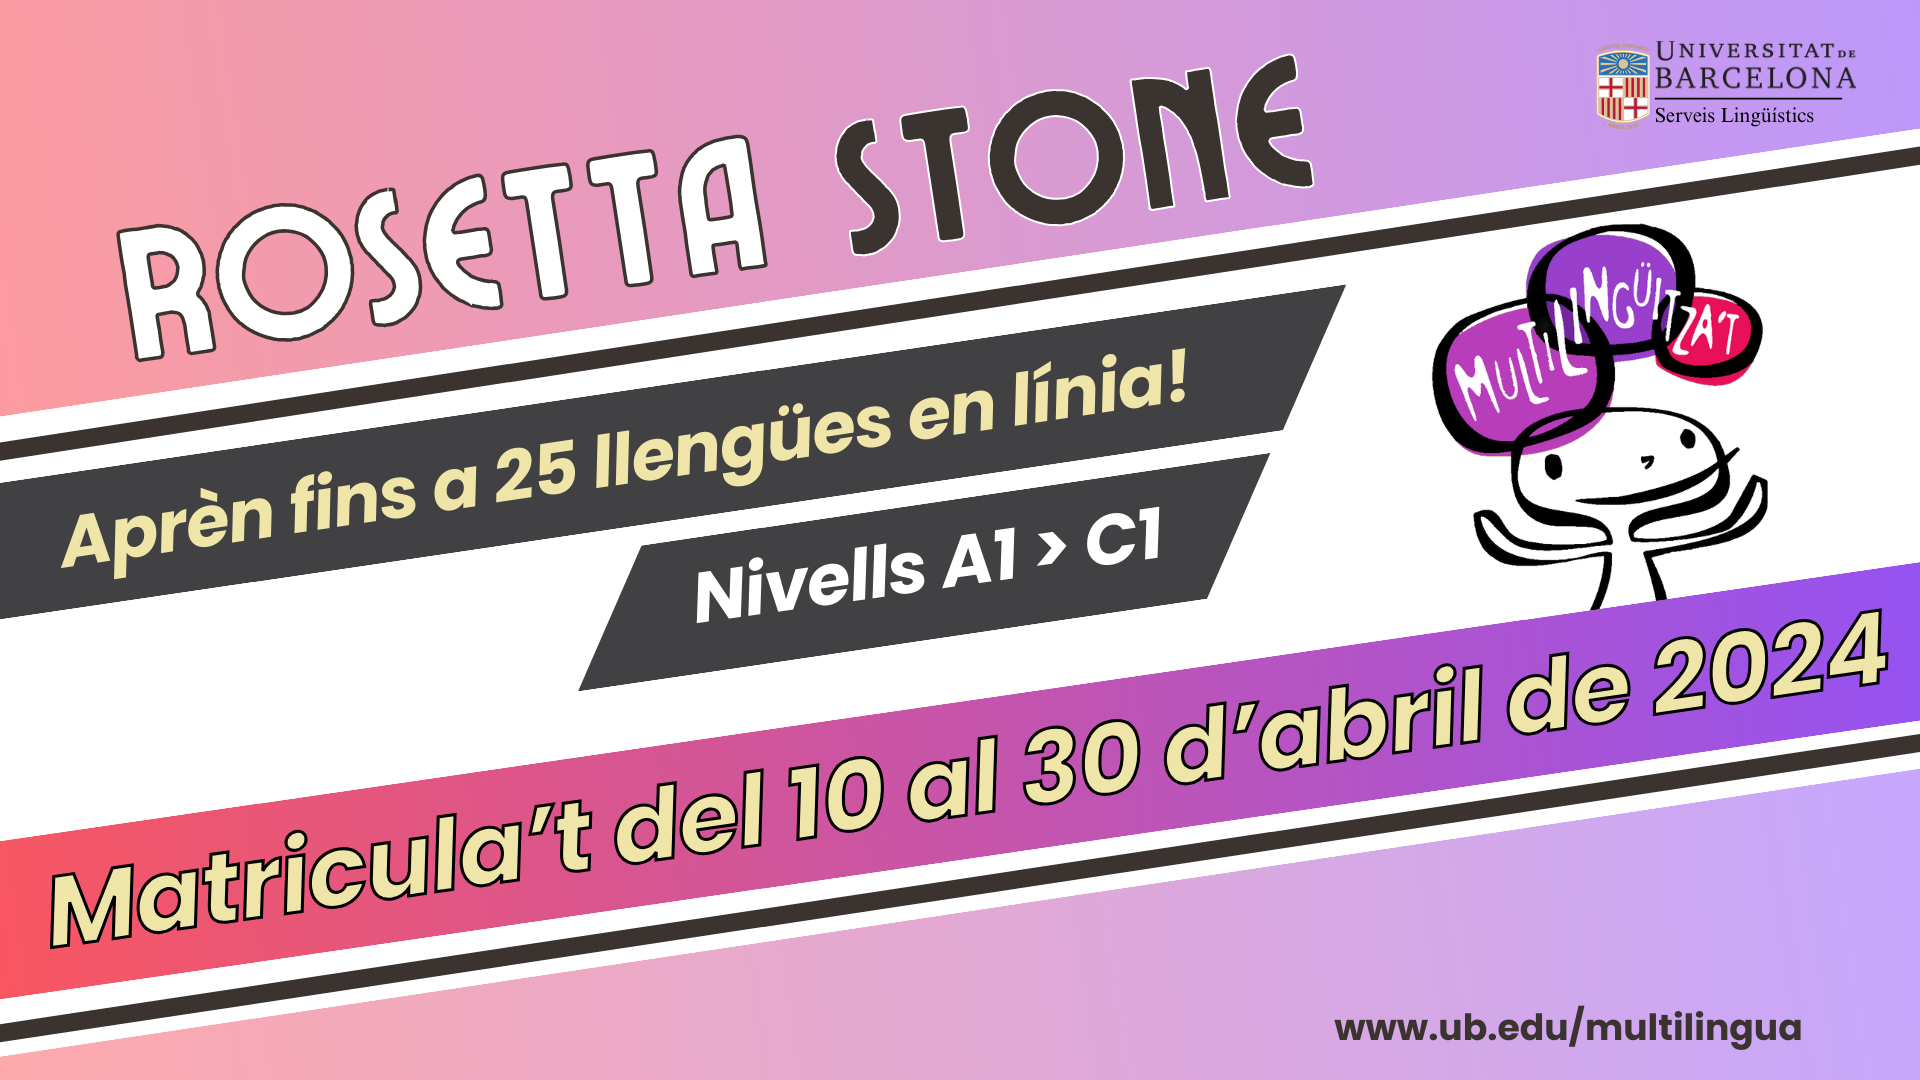 Matricula’t a Rosetta Stone fins el 30 d’abril: aprèn fins a 25 llengües en línia!